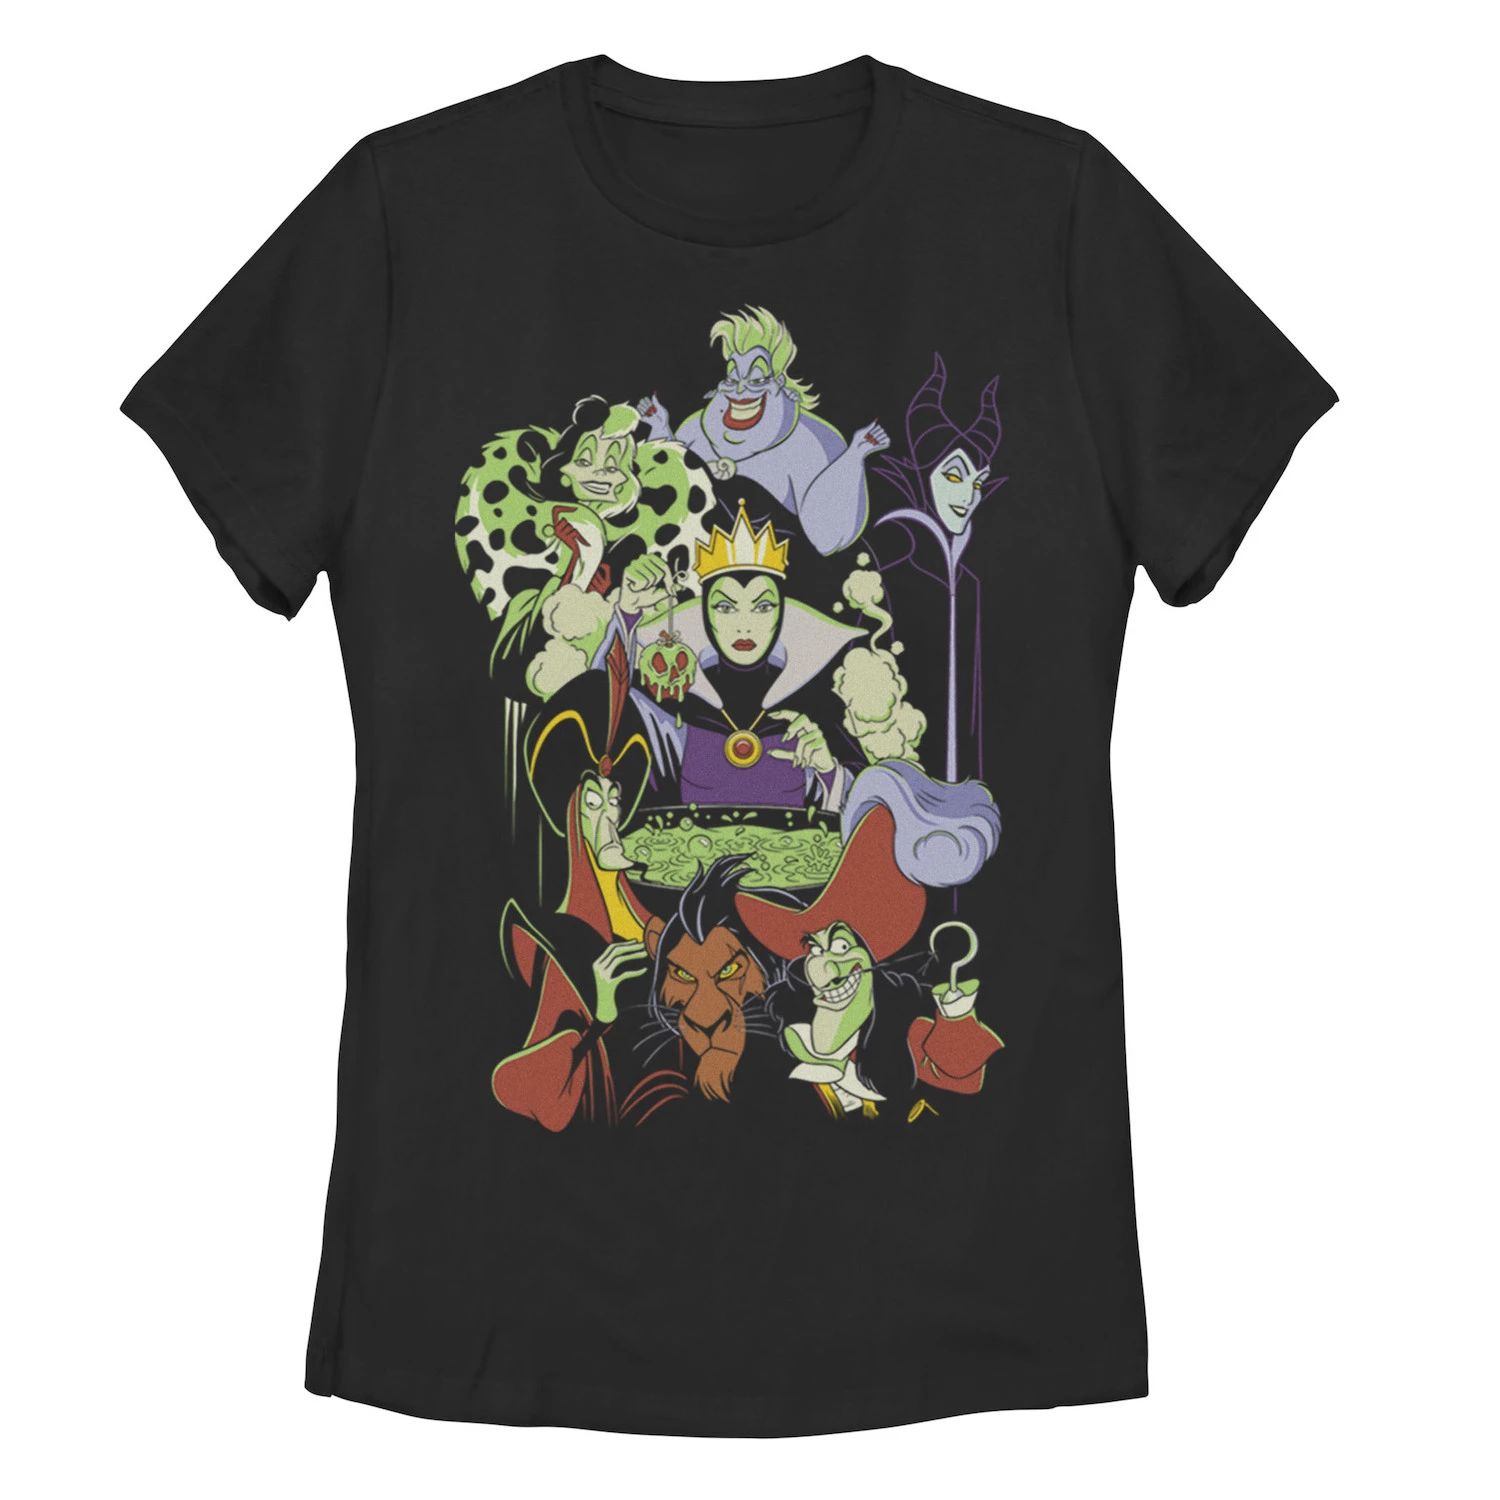 Футболка с графическим изображением Disney Villains Cauldron Group для юниоров Licensed Character футболка с изображением плаката и сетки disney villains для юниоров licensed character